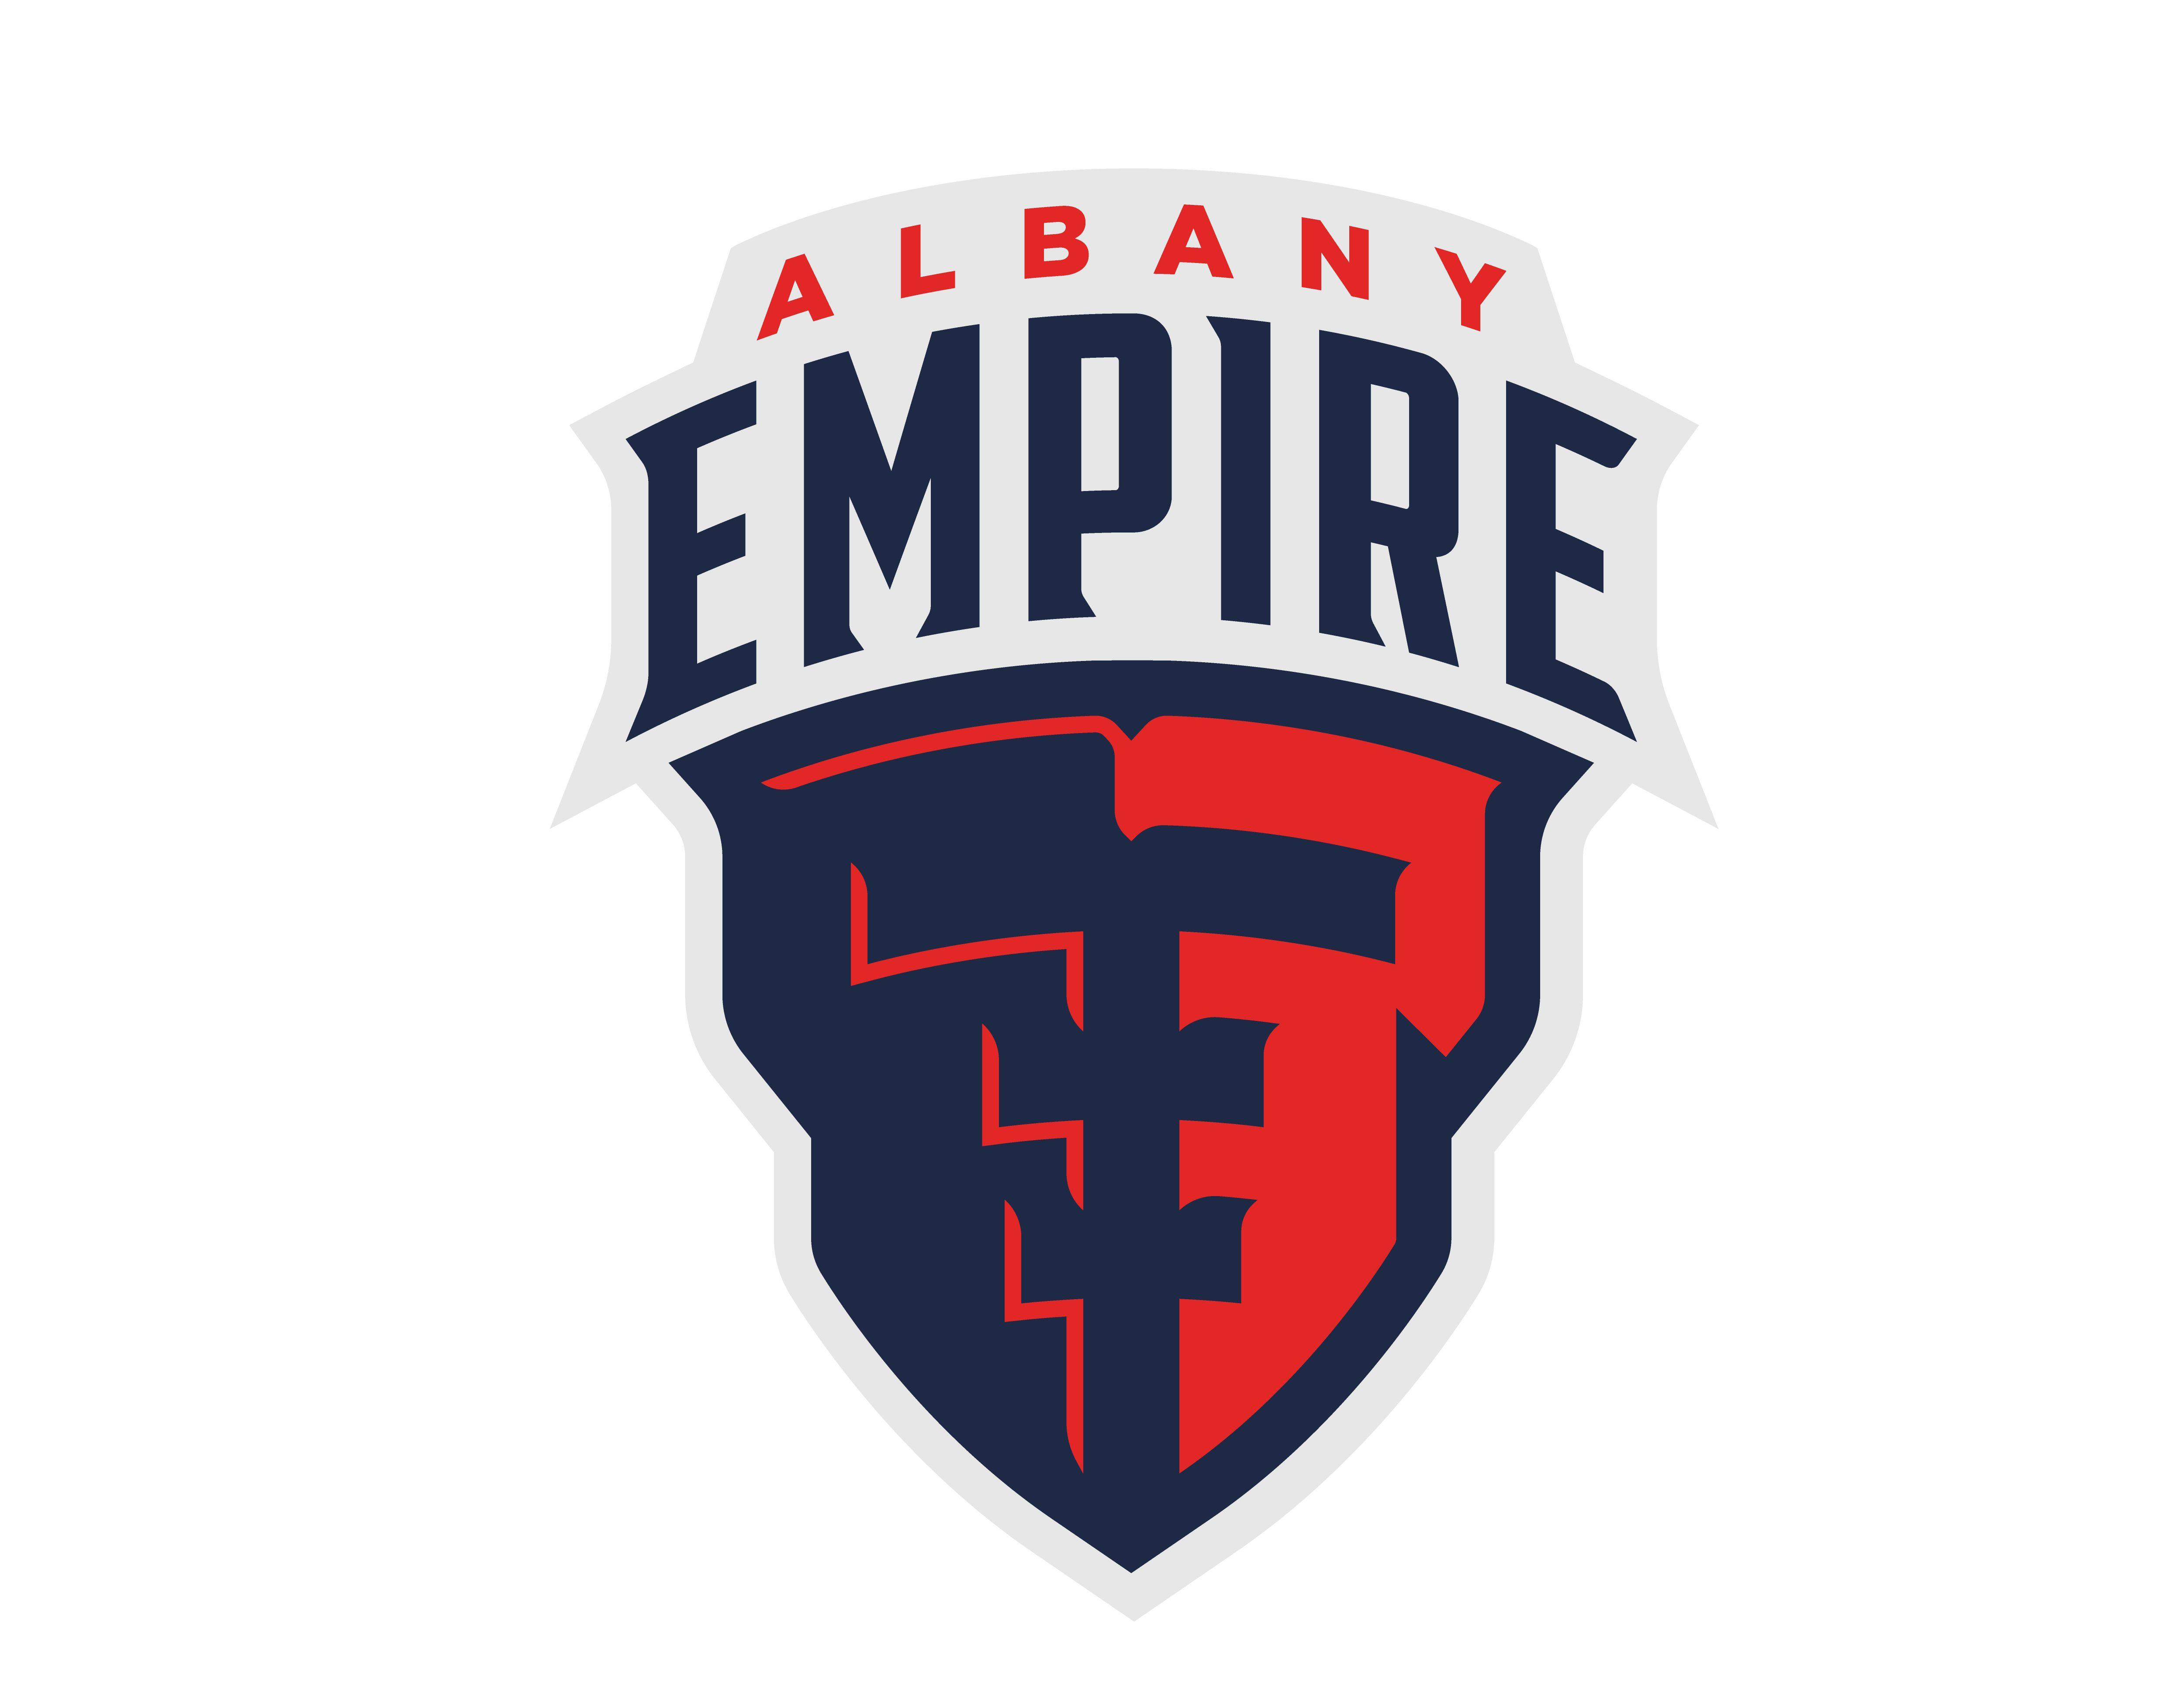 Empire Logo - Albany Empire Announced as AFL Team Name and Logo. Capital Region